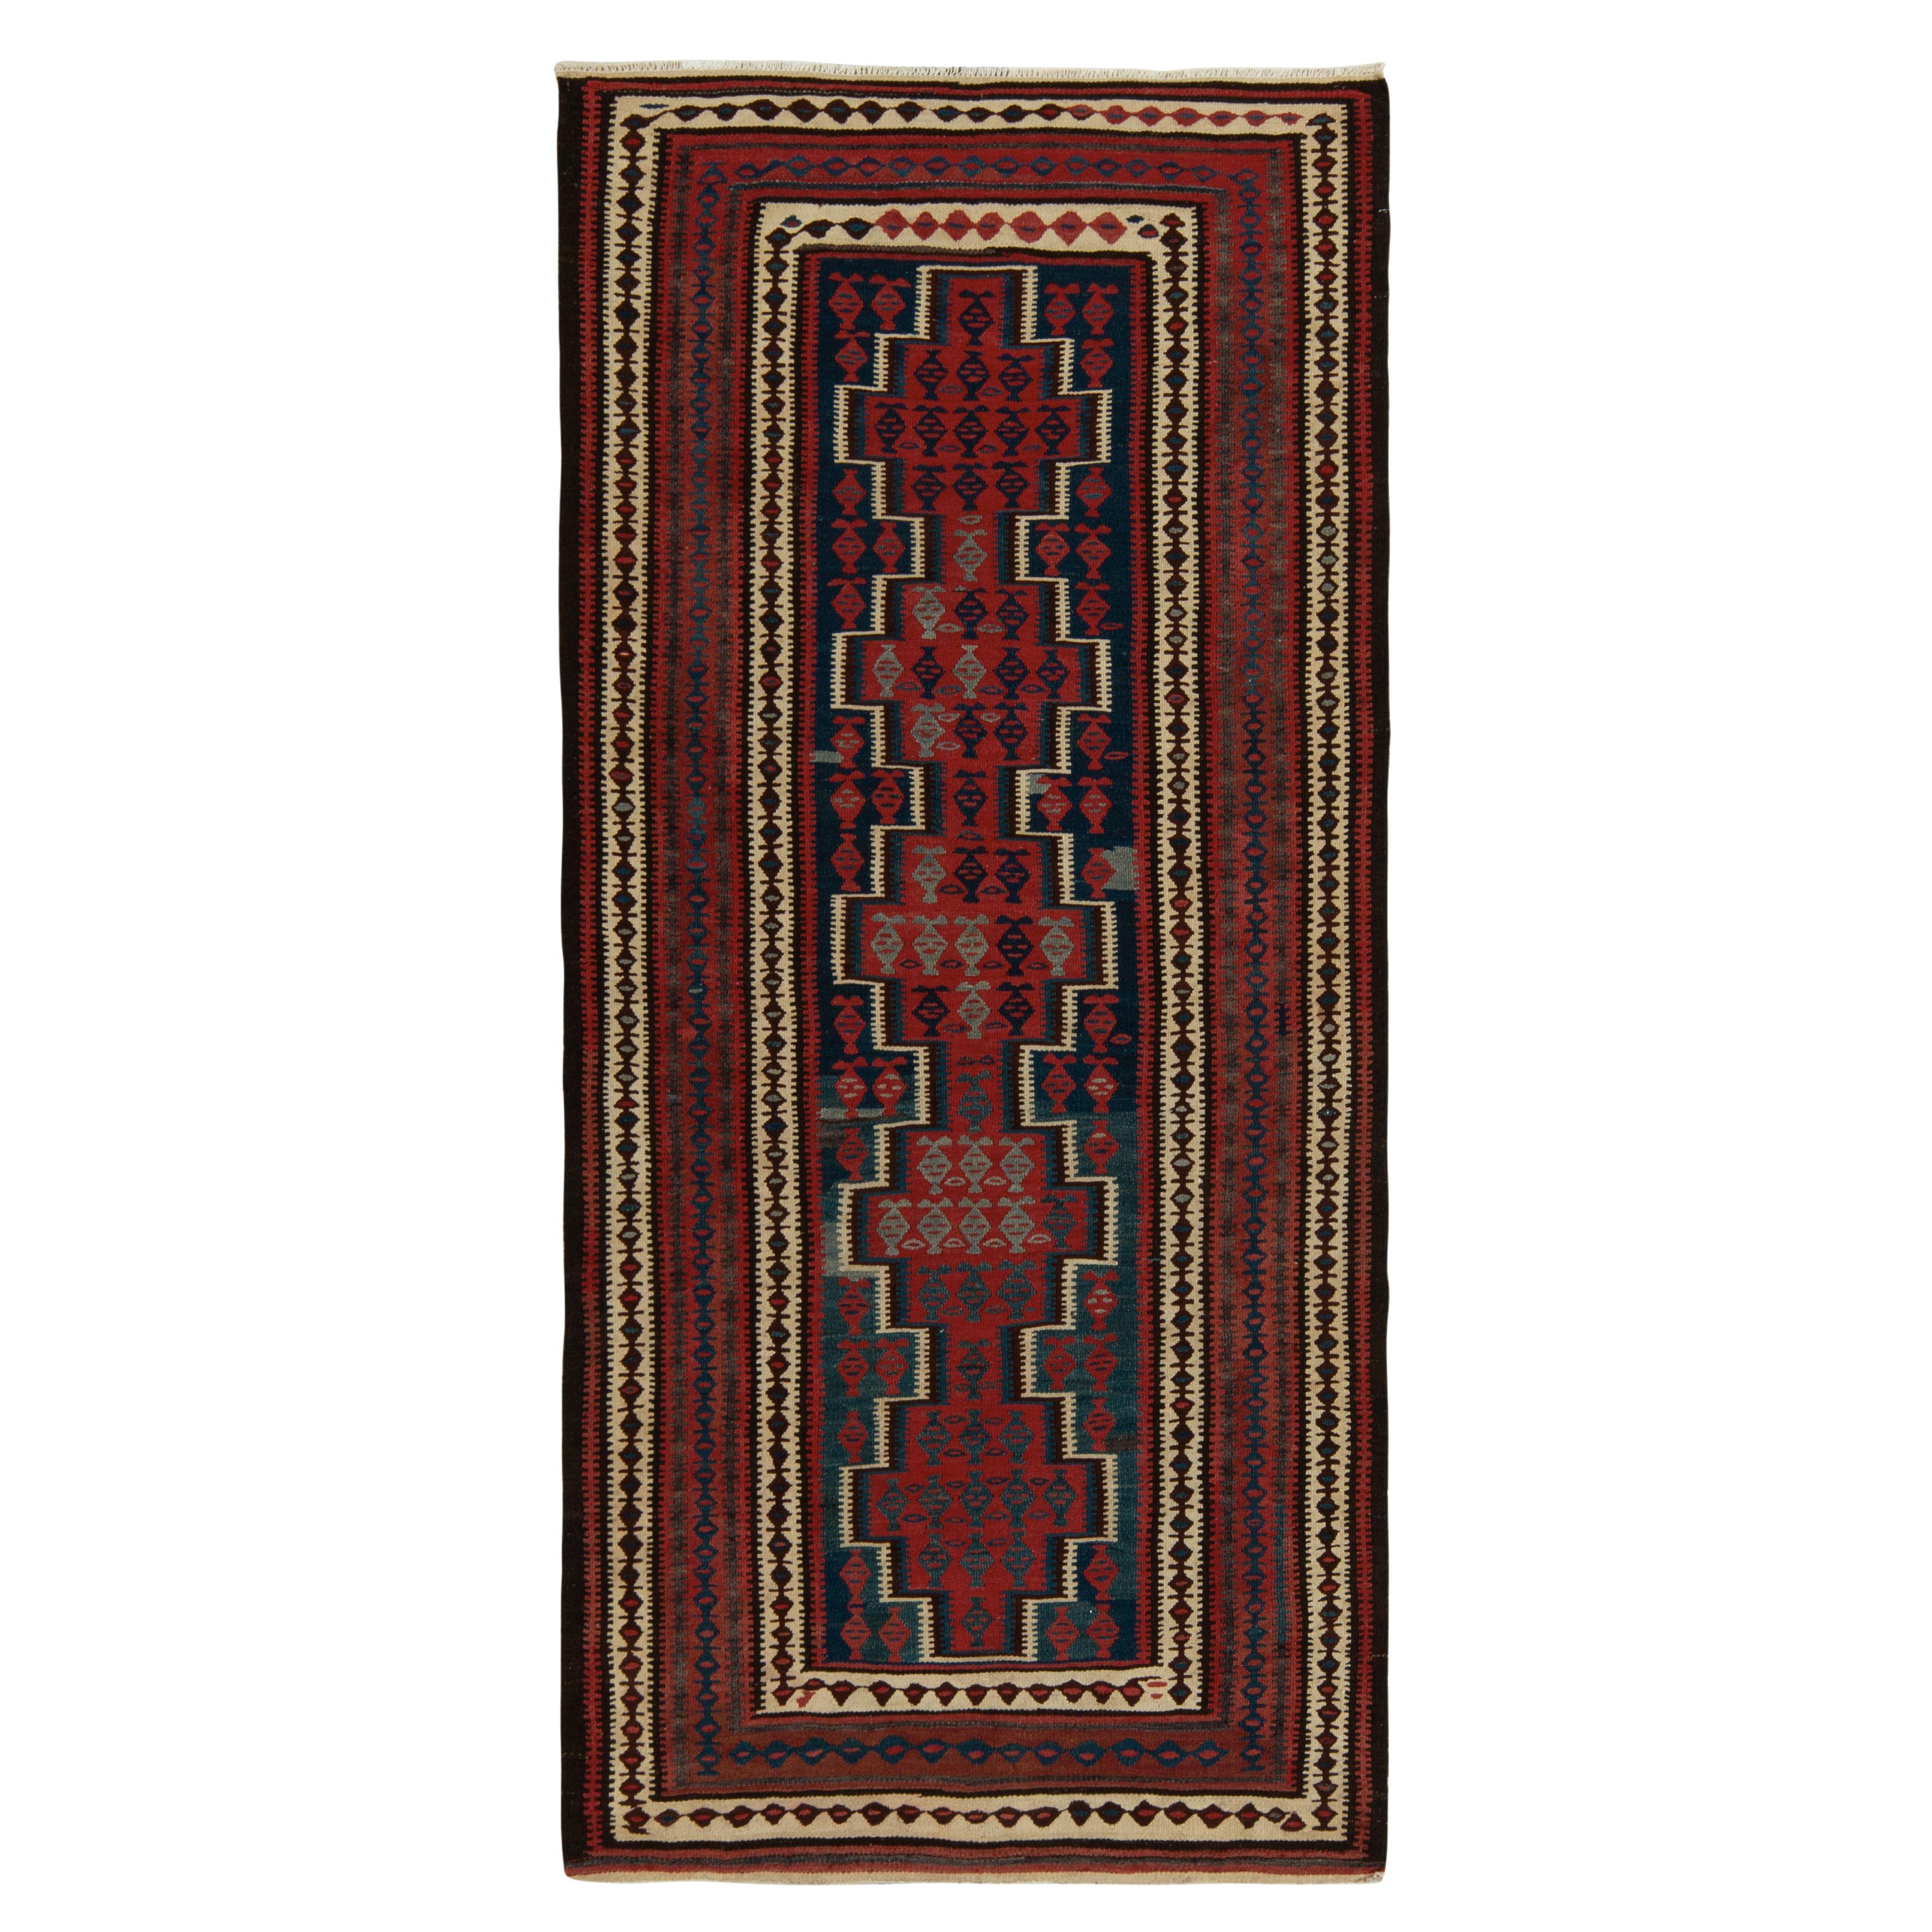 Vintage-Kelim-Teppich aus den 1950er Jahren mit roten, blauen und braunen geometrischen Mustern von Rug & Kilim